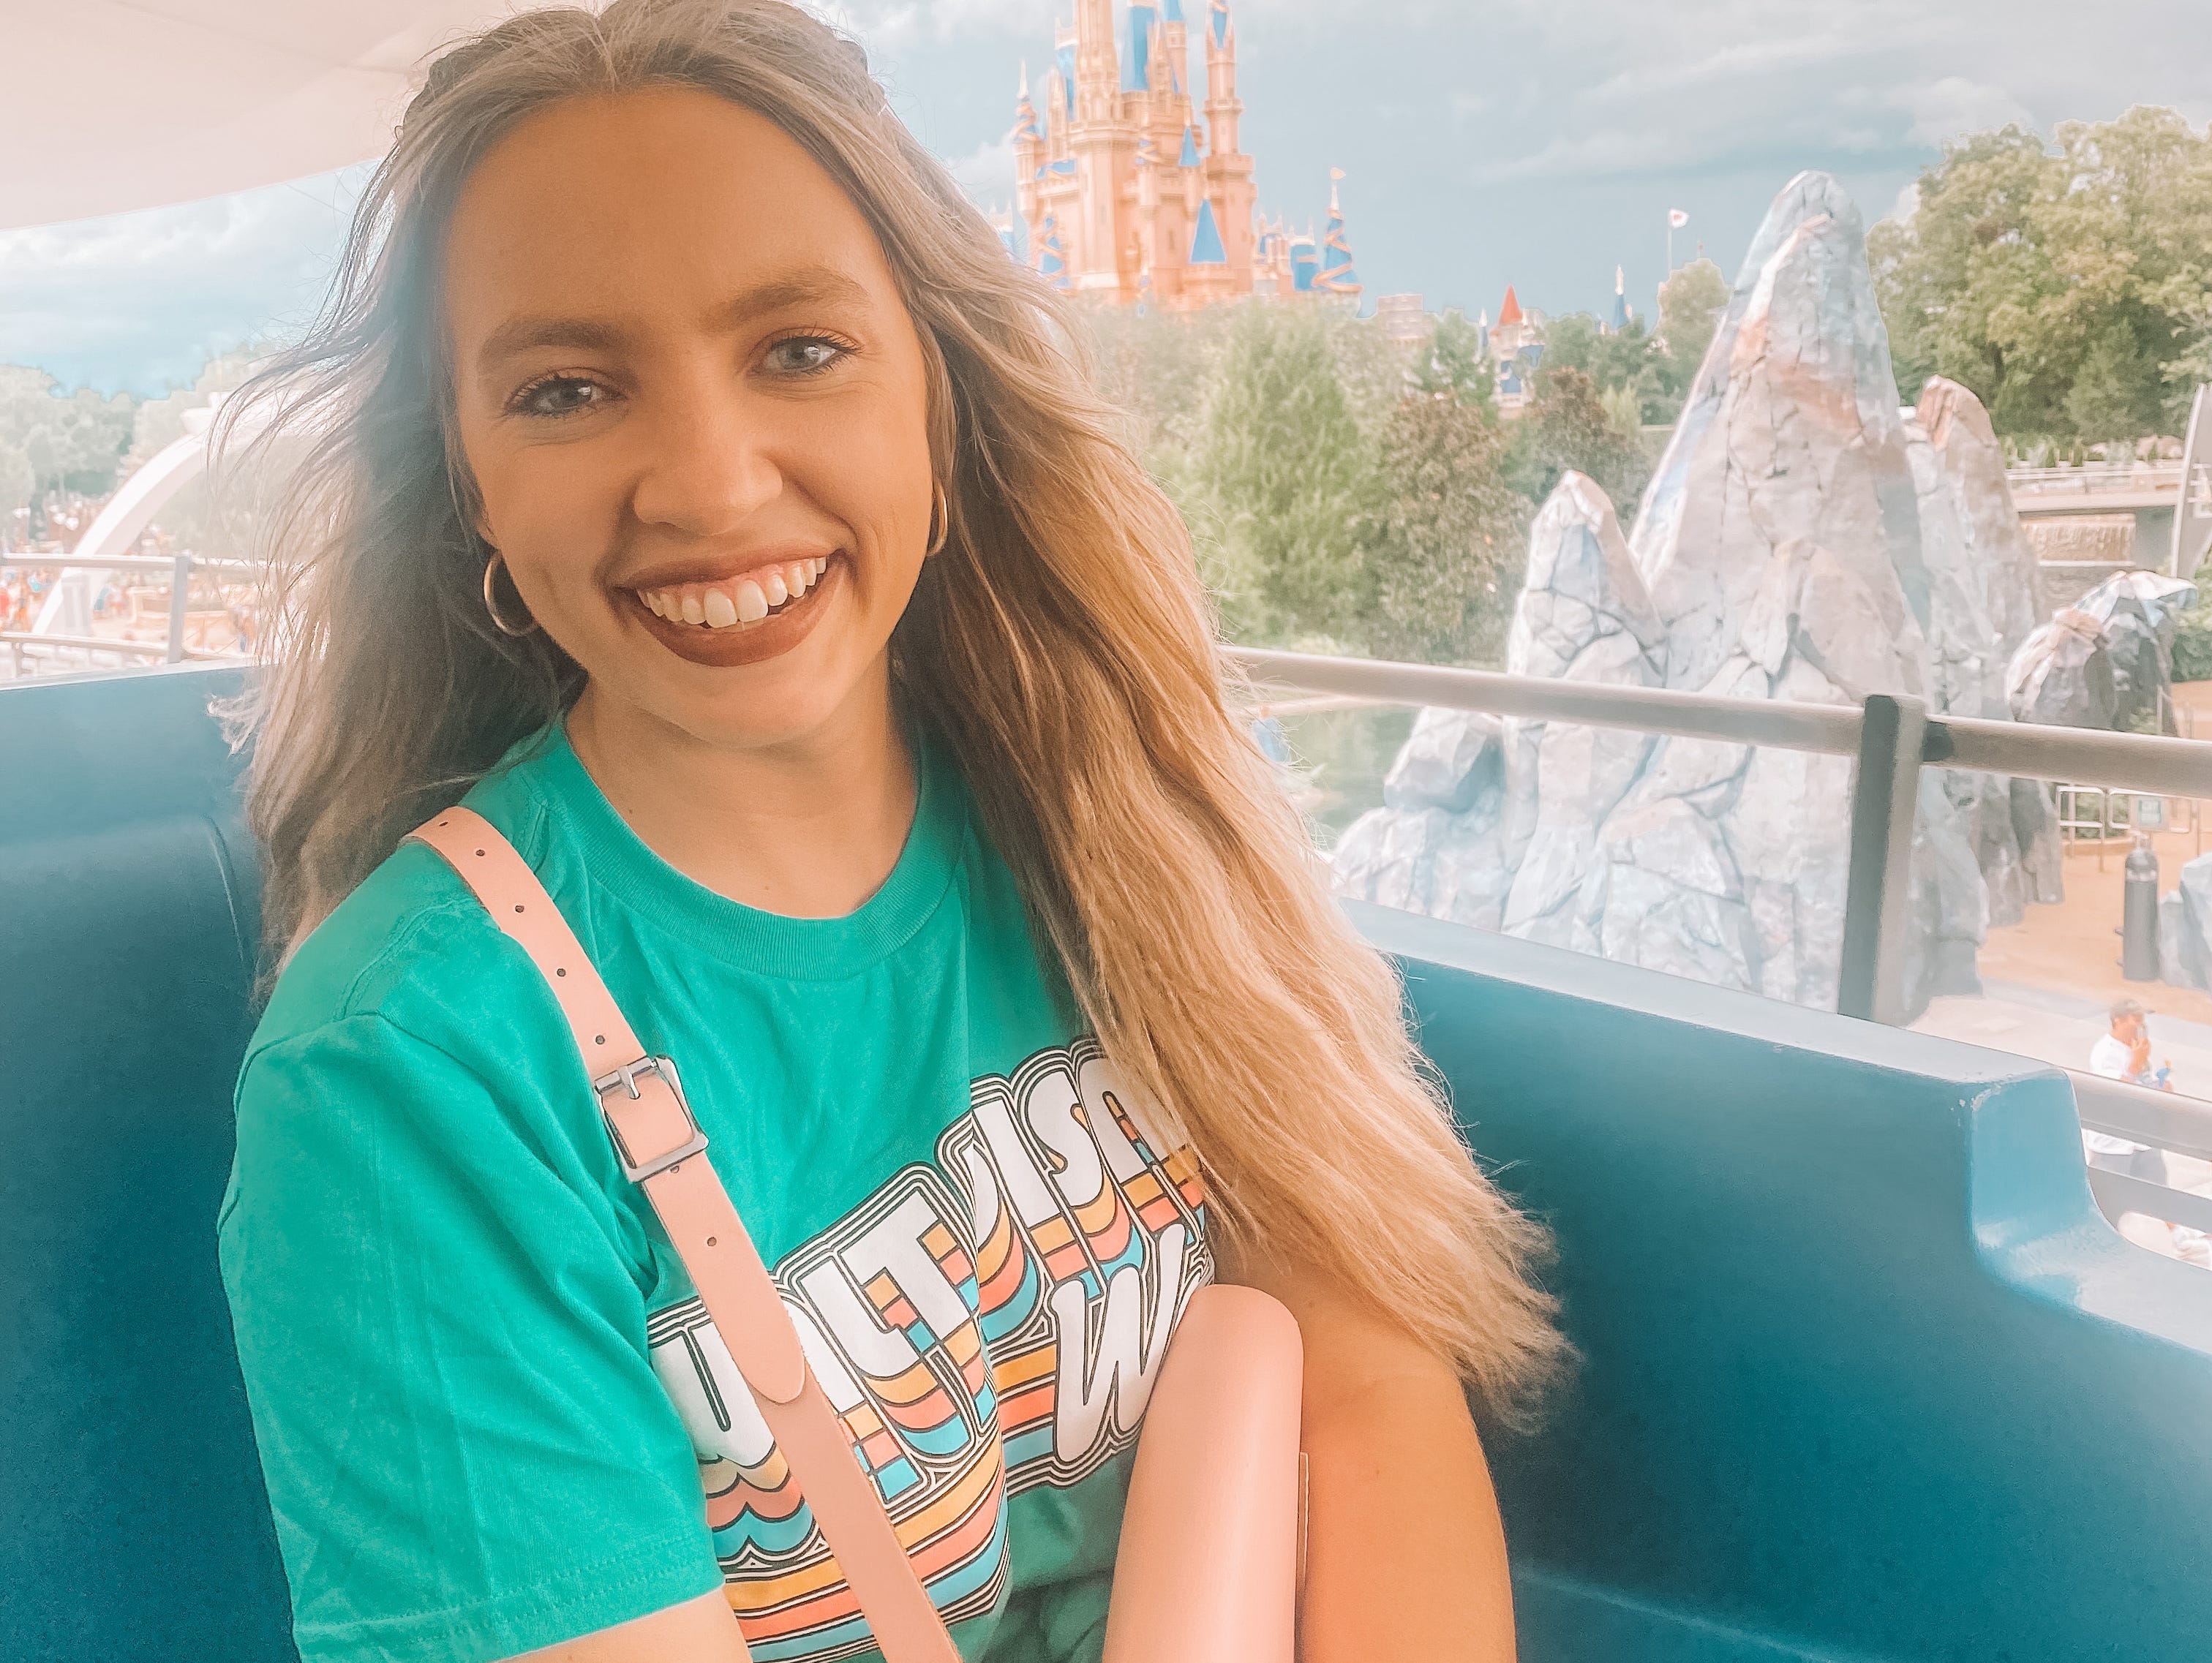 Kayleigh Price fährt mit dem People Mover im Magic Kingdom in Disney World